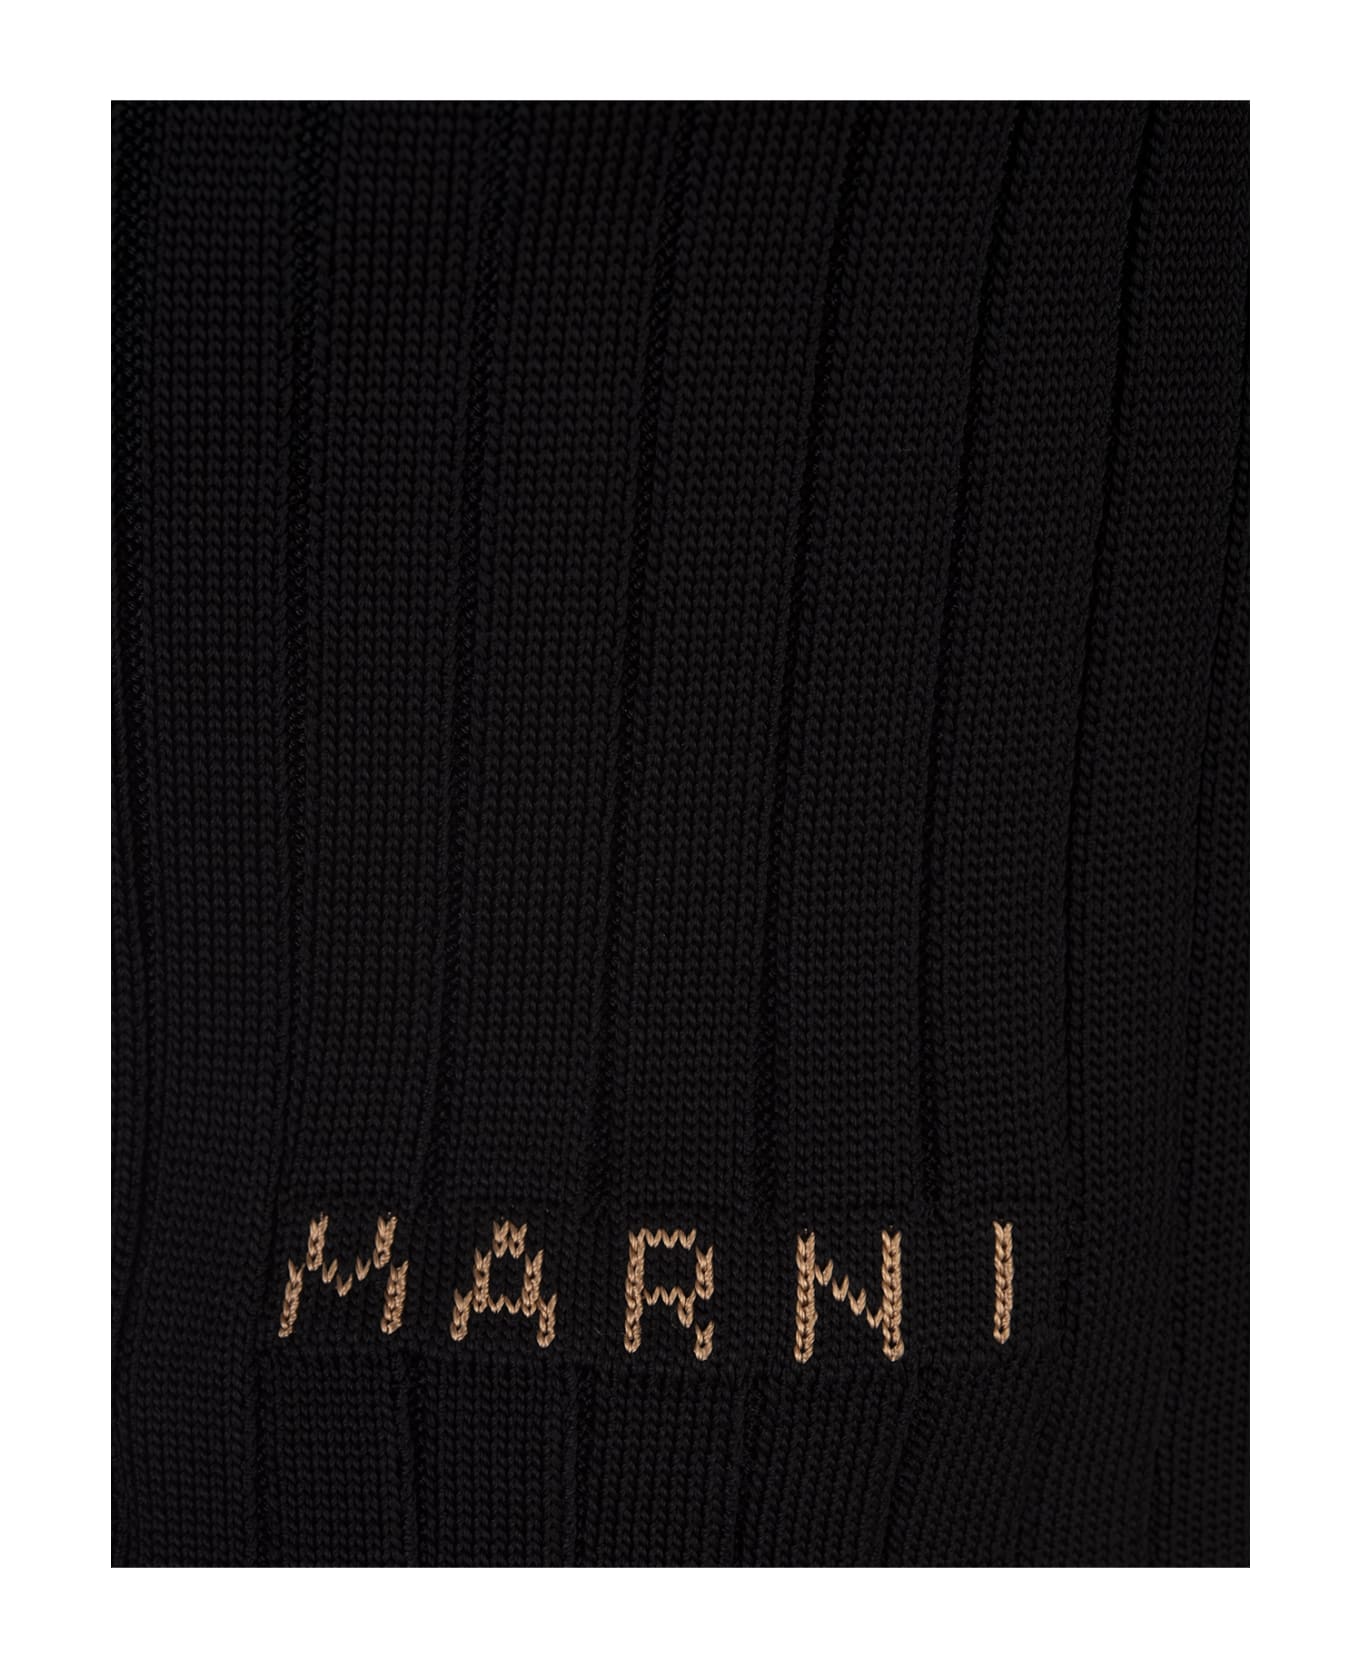 Marni Black Ribbed Knit Short Cardigan - Black カーディガン